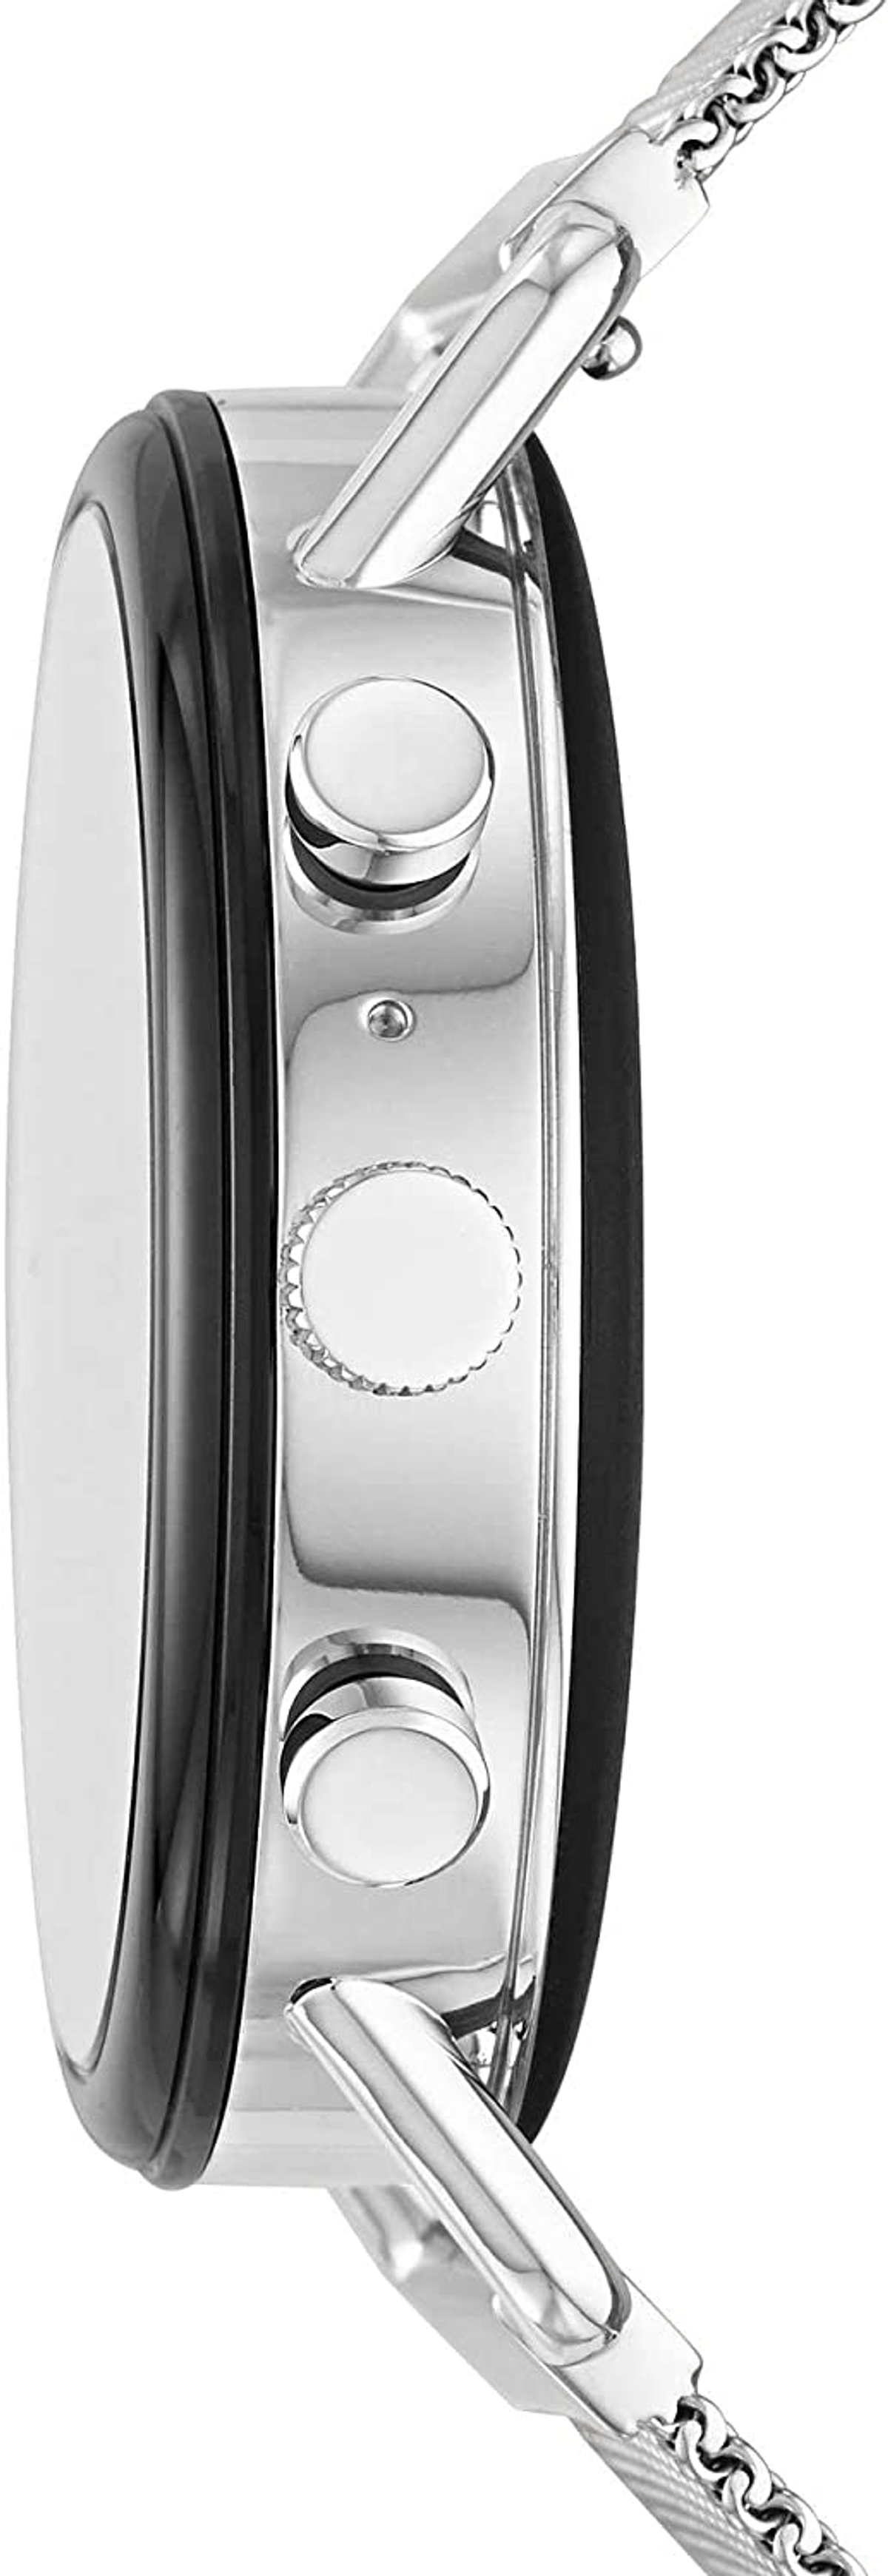 SKAGEN Smartwatch Skagen SKT5102 Smartwatch silicone, Silver/Black mm, Edelstahl 185